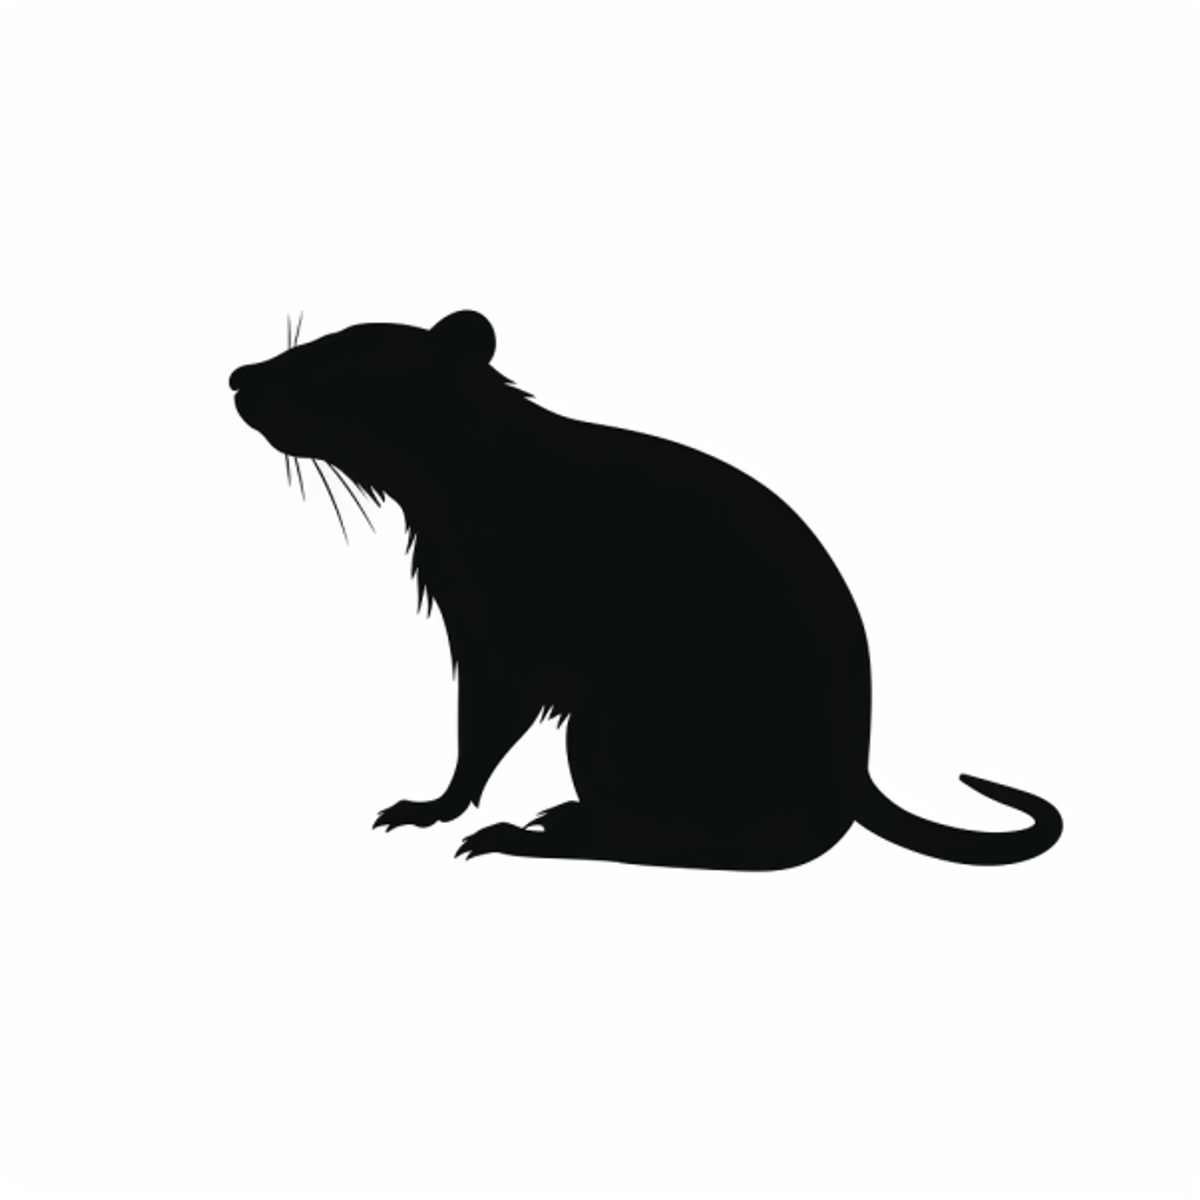 Råttors intelligens: Vikten av att välja rätt bete för råttfällan